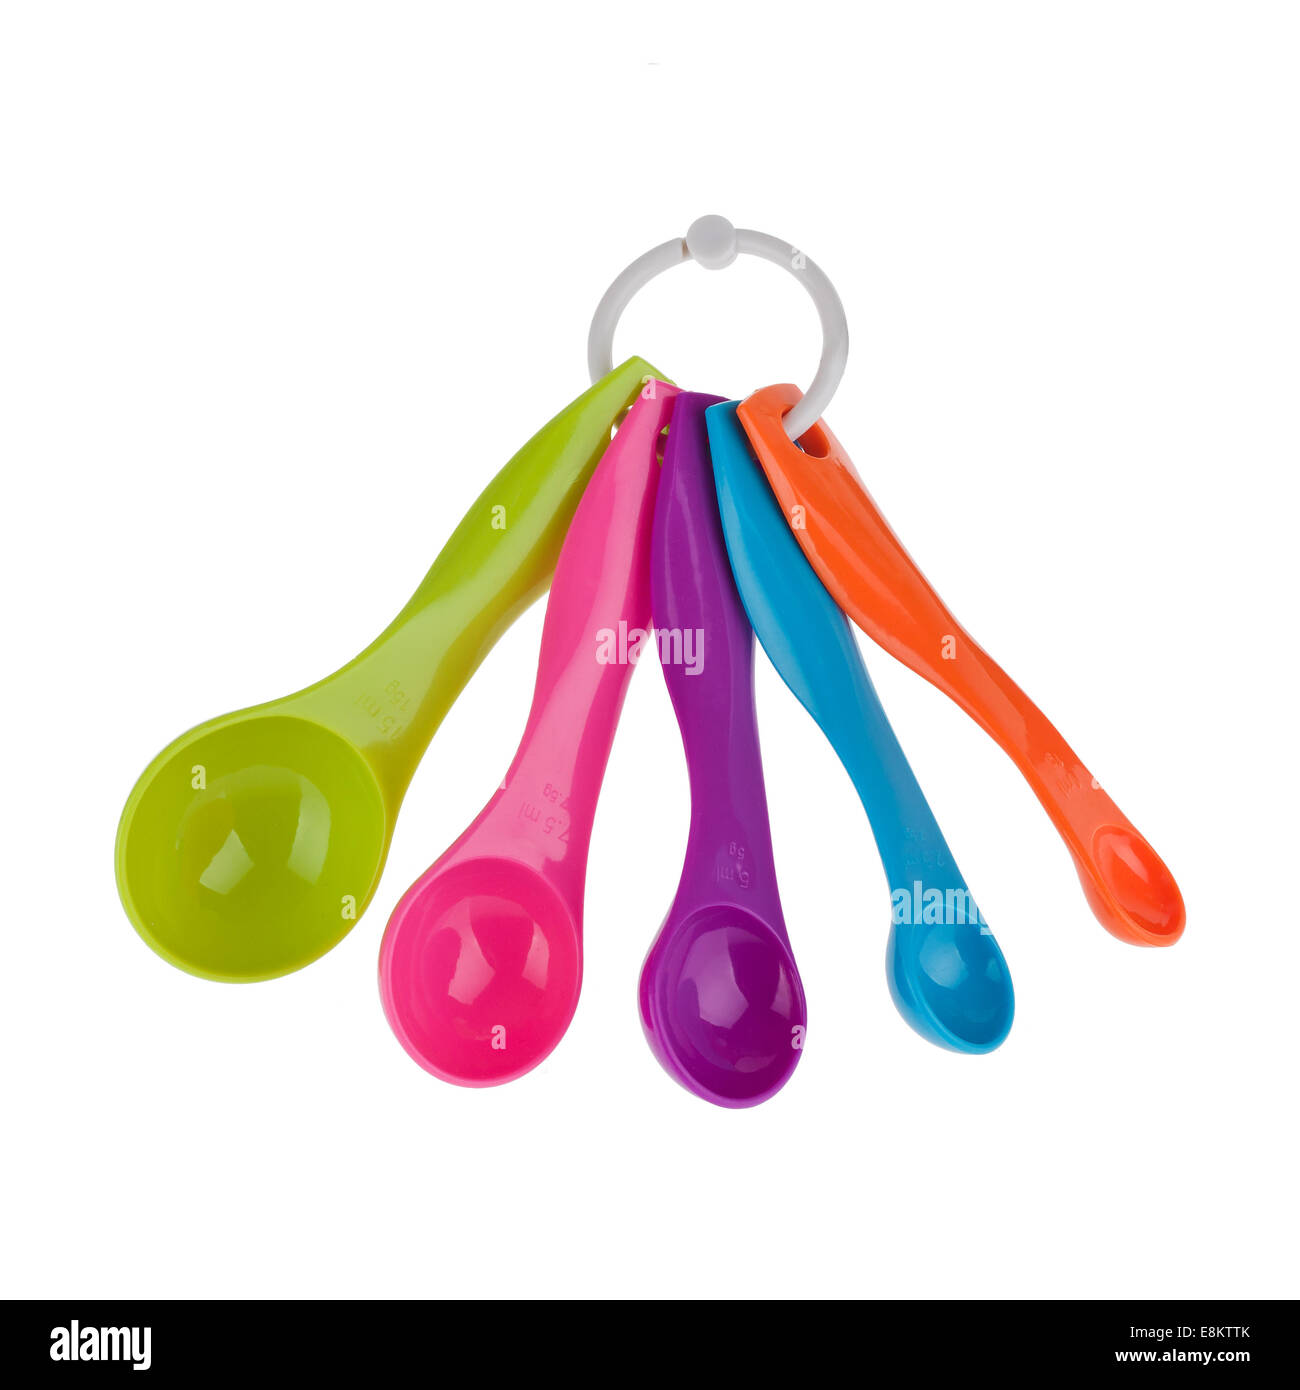 https://c8.alamy.com/comp/E8KTTK/colorful-measuring-spoons-isolated-on-white-E8KTTK.jpg